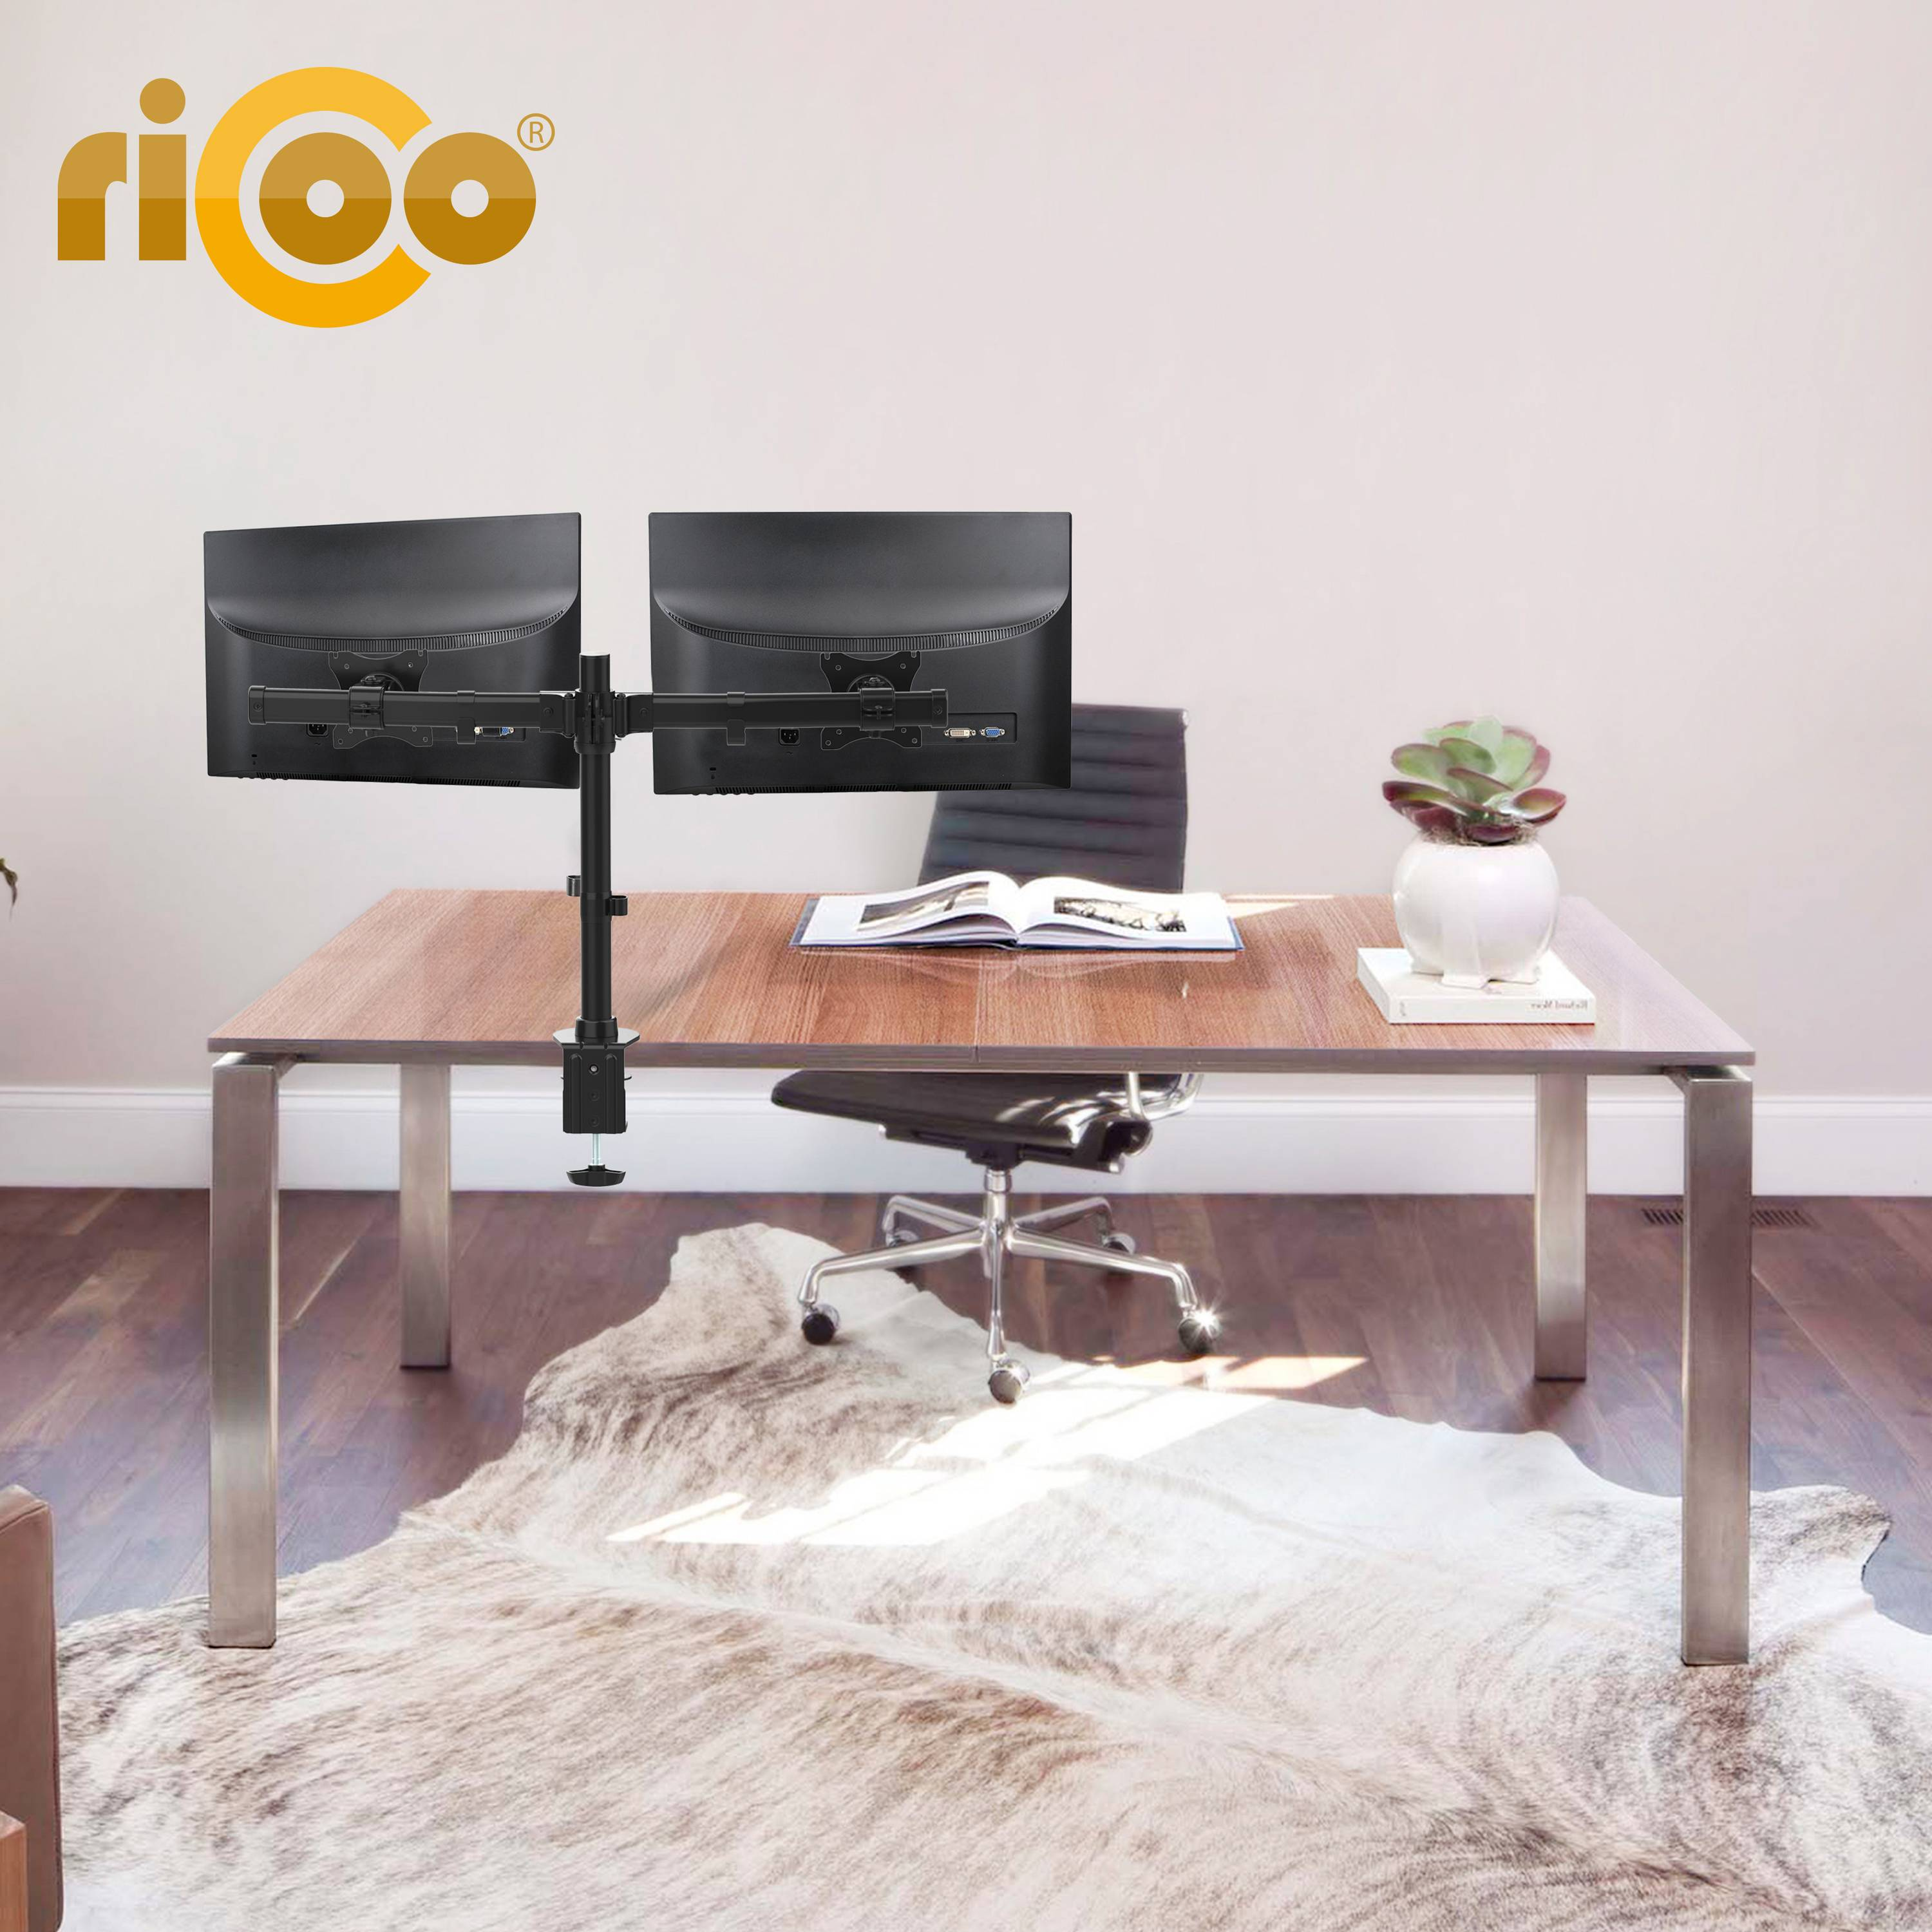 RICOO TS7811 Monitor Tischhalterung, schwarz